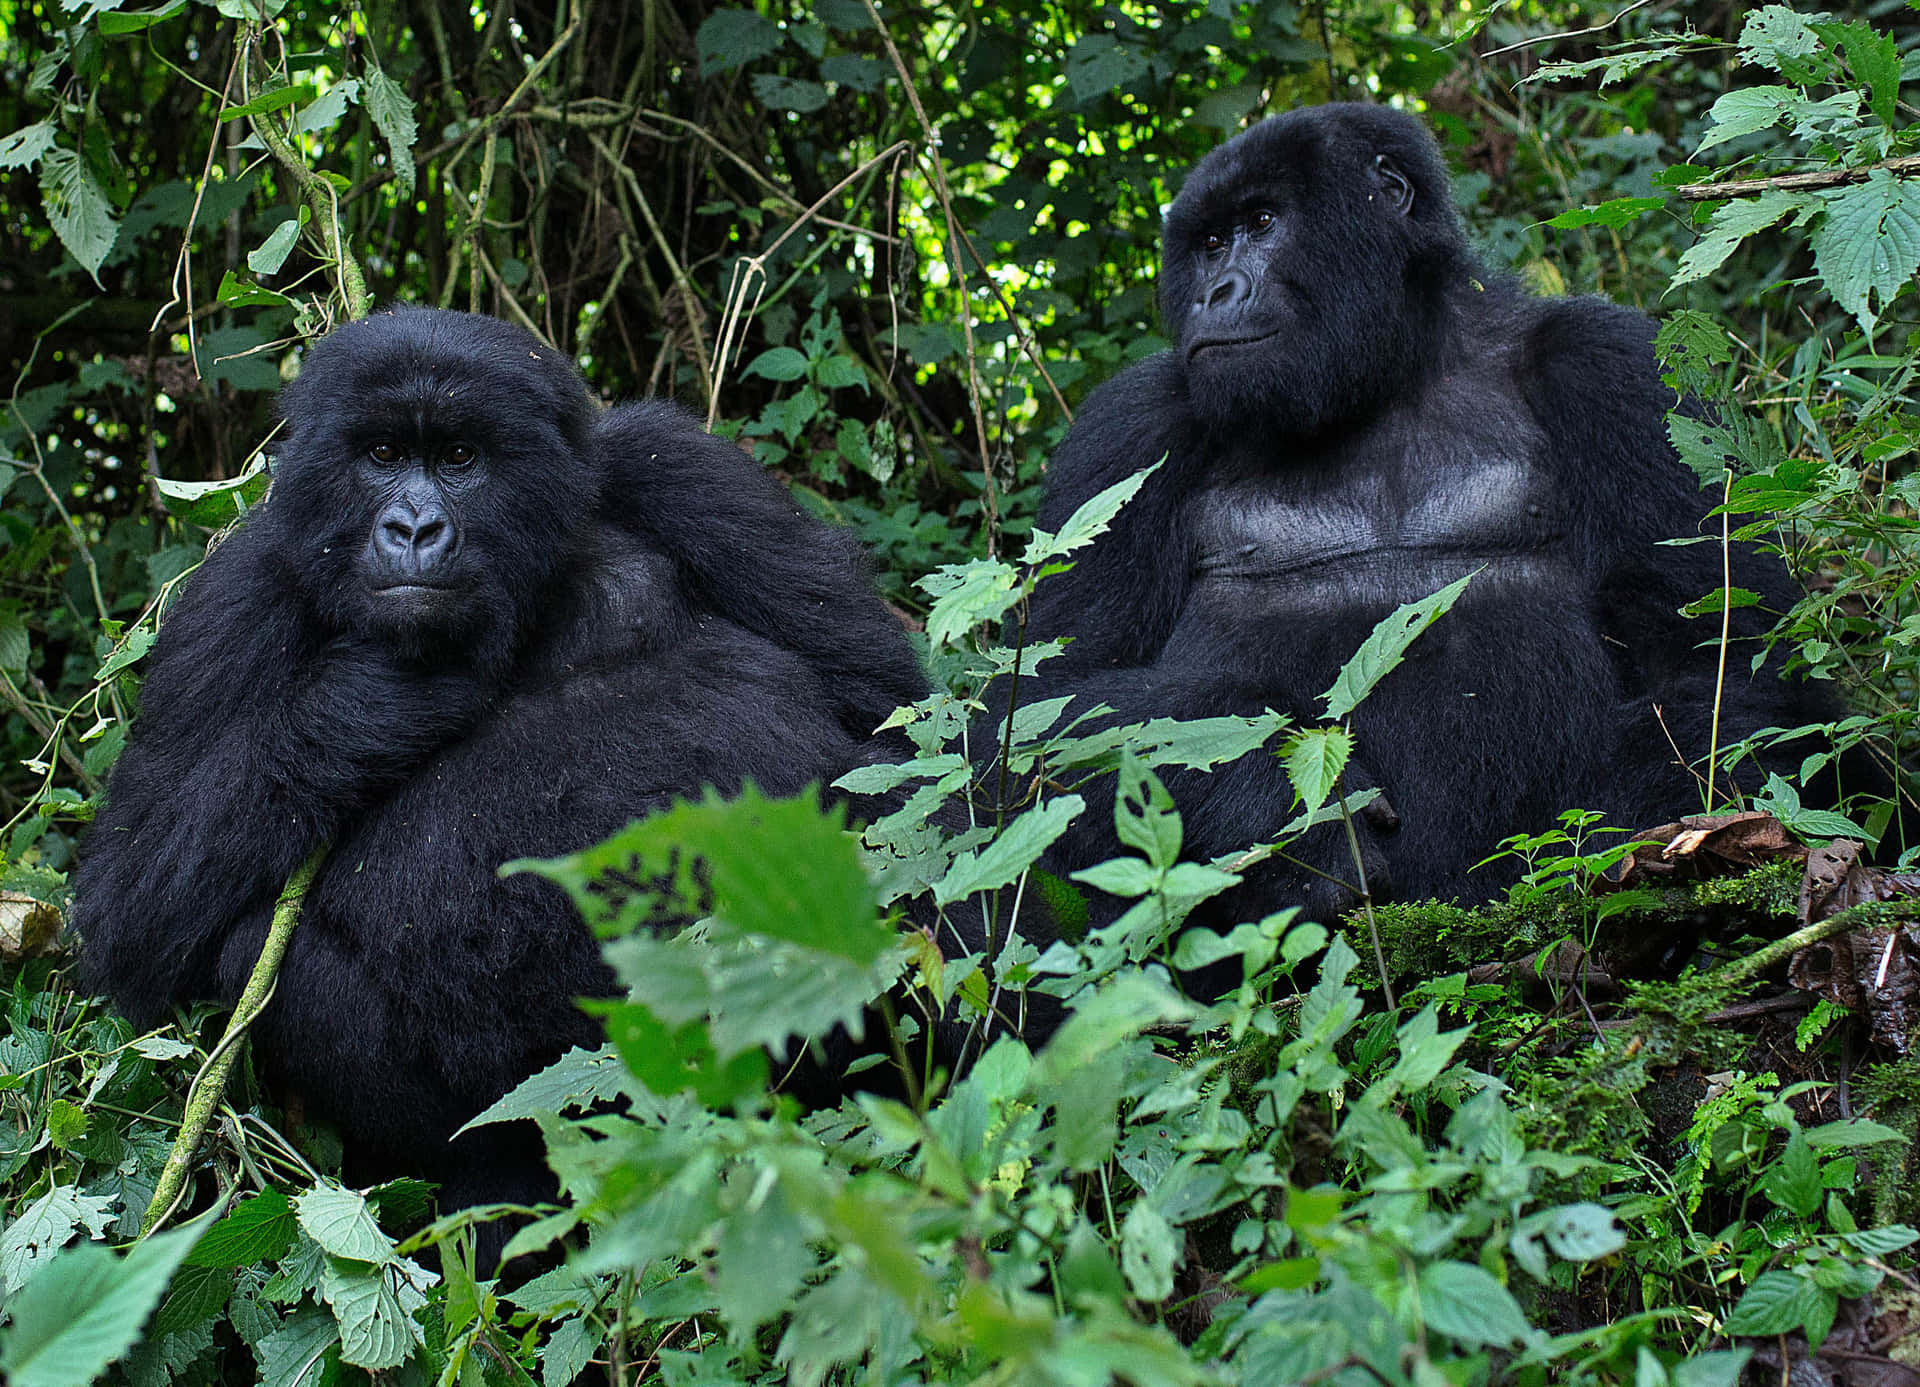 Enmajestætisk Gorilla Kigger Ud Fra Sit Naturlige Habitat.